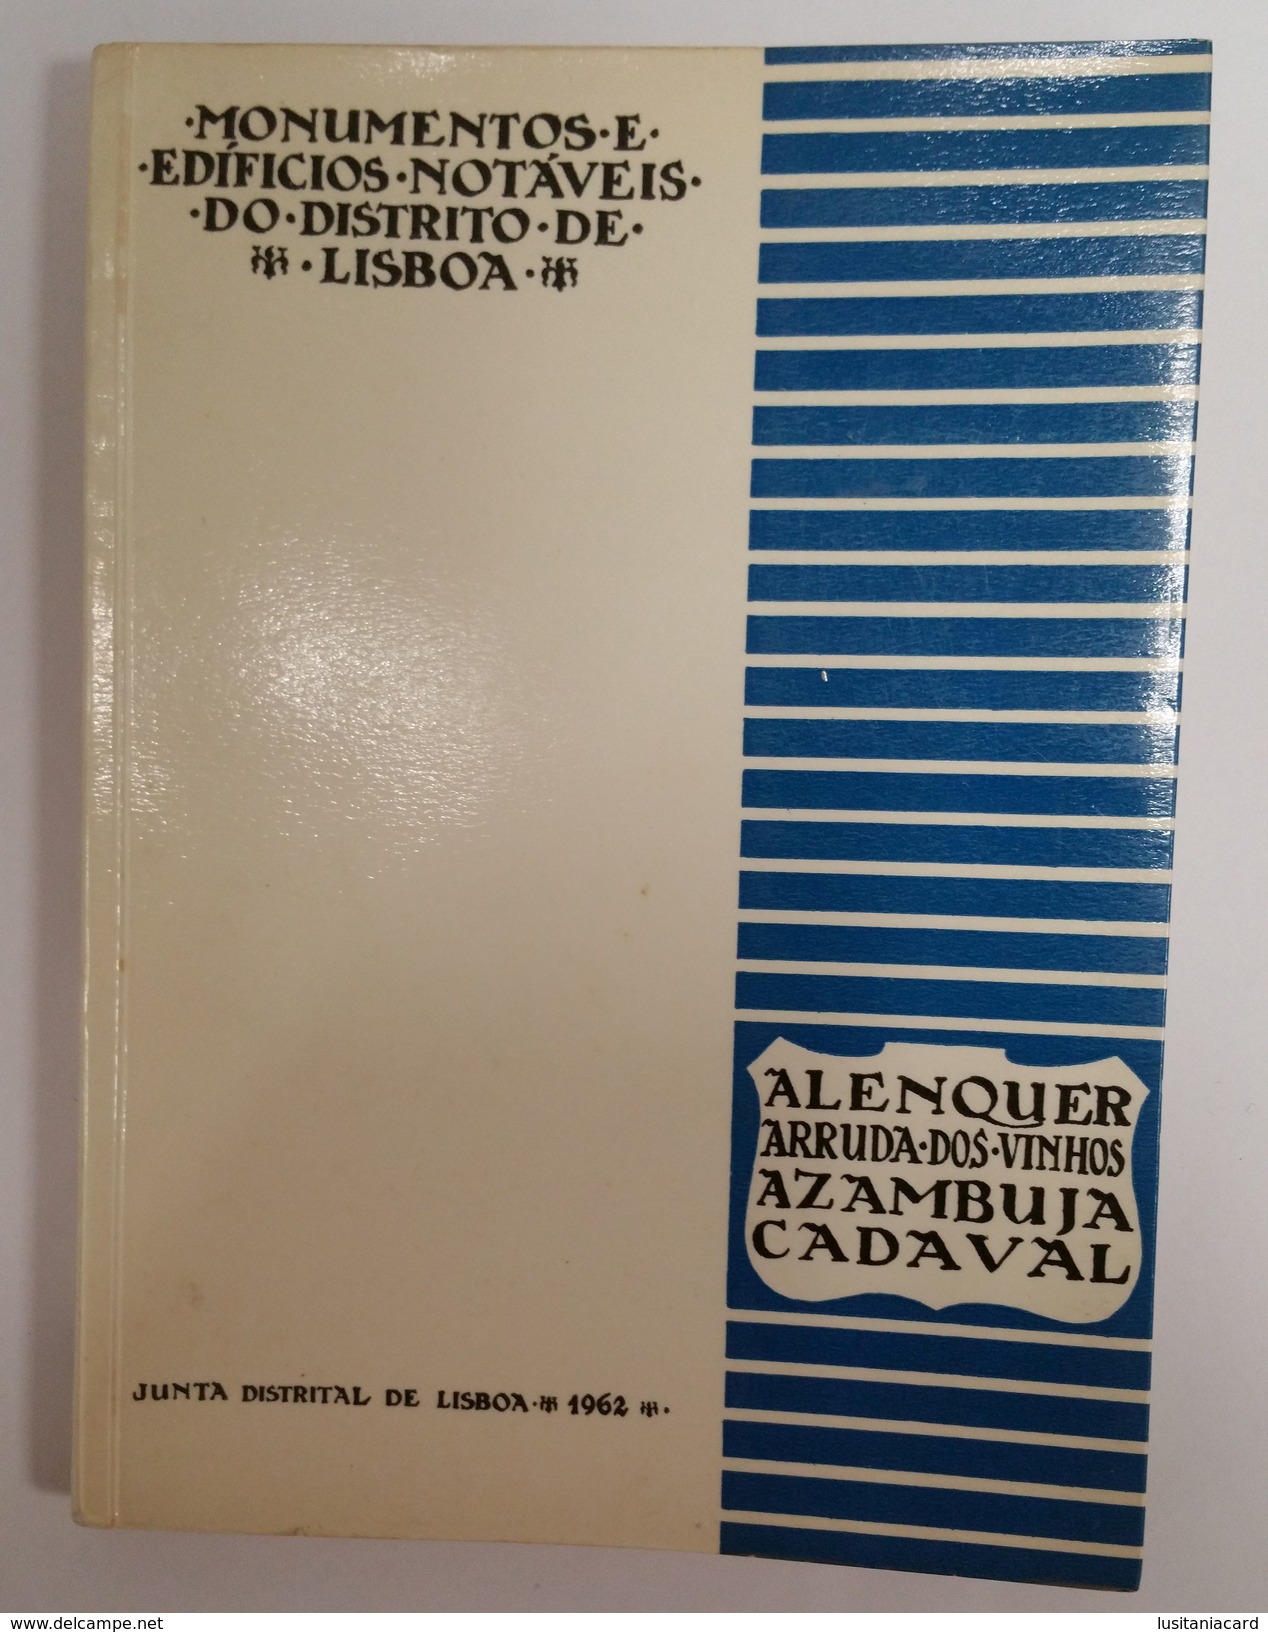 LISBOA - MONOGRAFIA - Monumentos E Edificios Notaveis Do Distrito De Lisboa(Ed. Junta Distrital De Lisboa -1962) - Livres Anciens